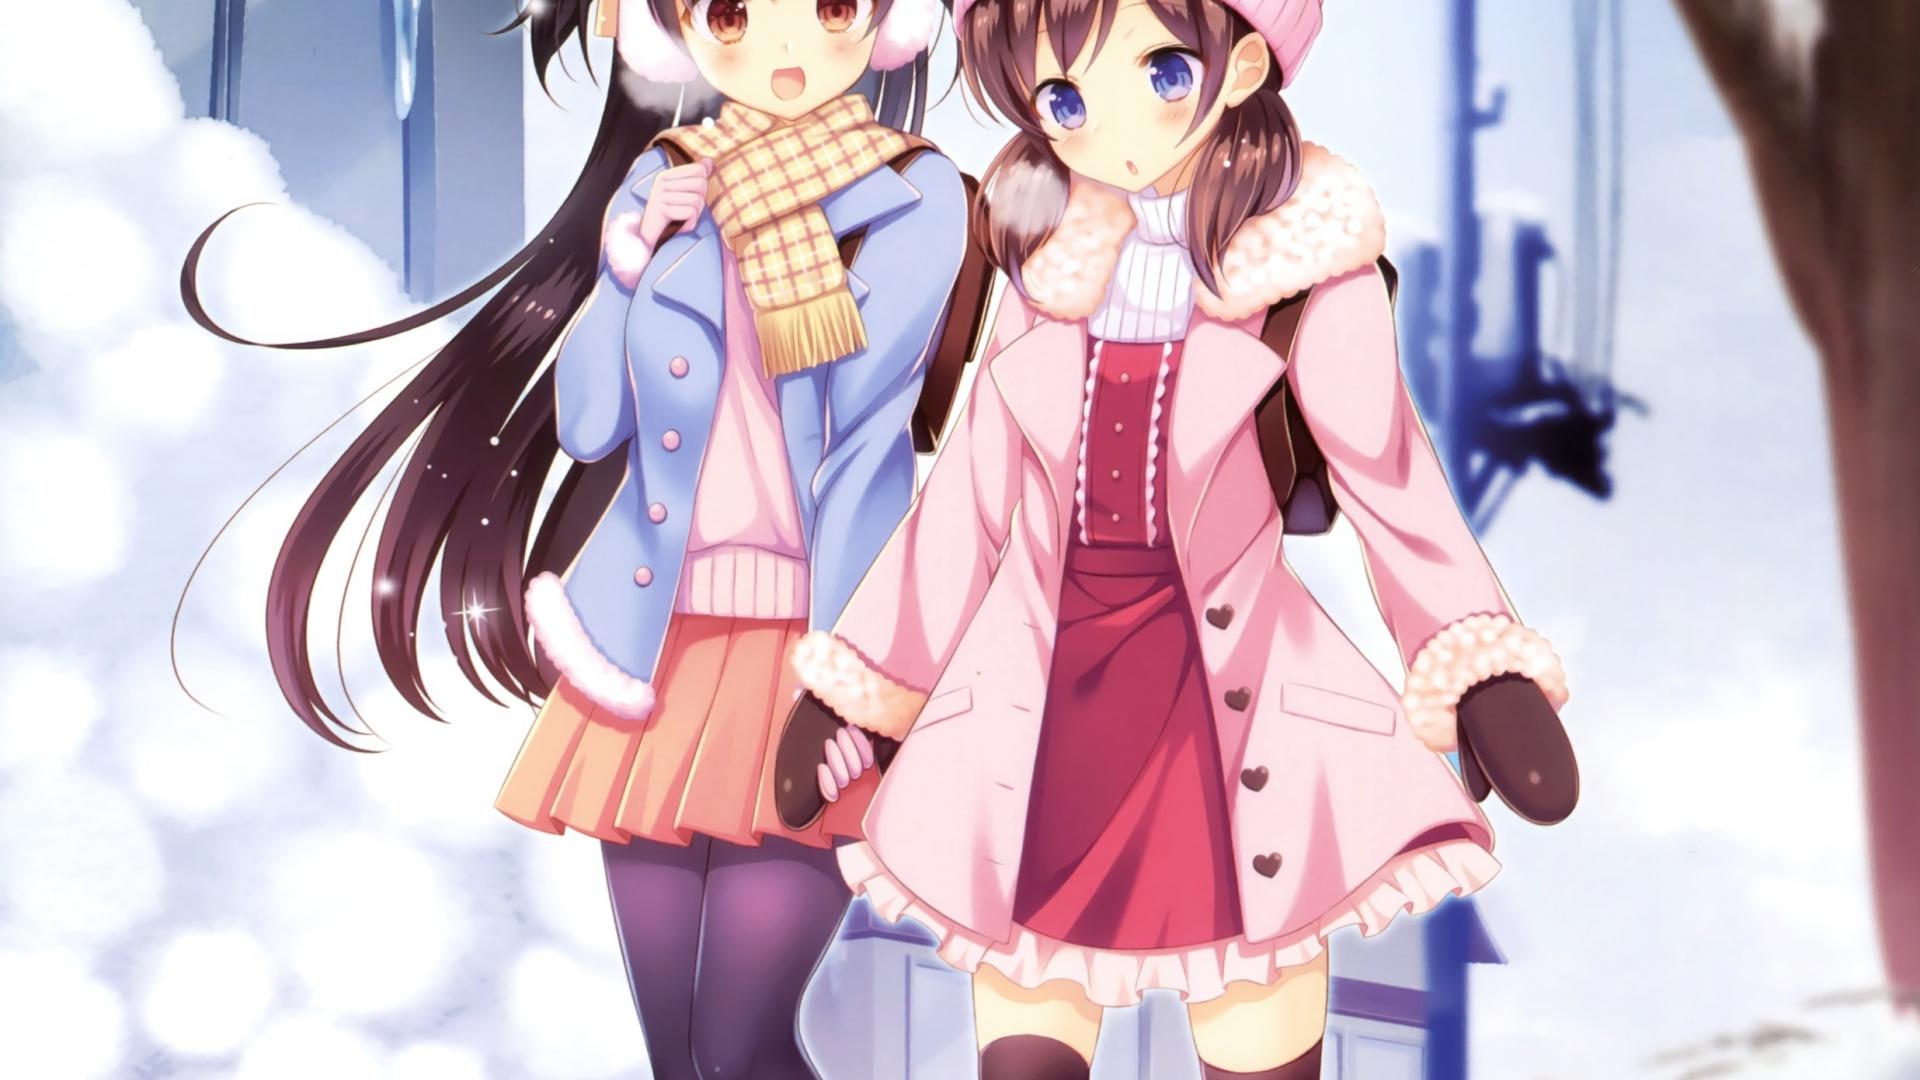 Winter, Outdoor, Girls, Anime, Friends, Wallpaper Image Anime Friend Wallpaper & Background Download